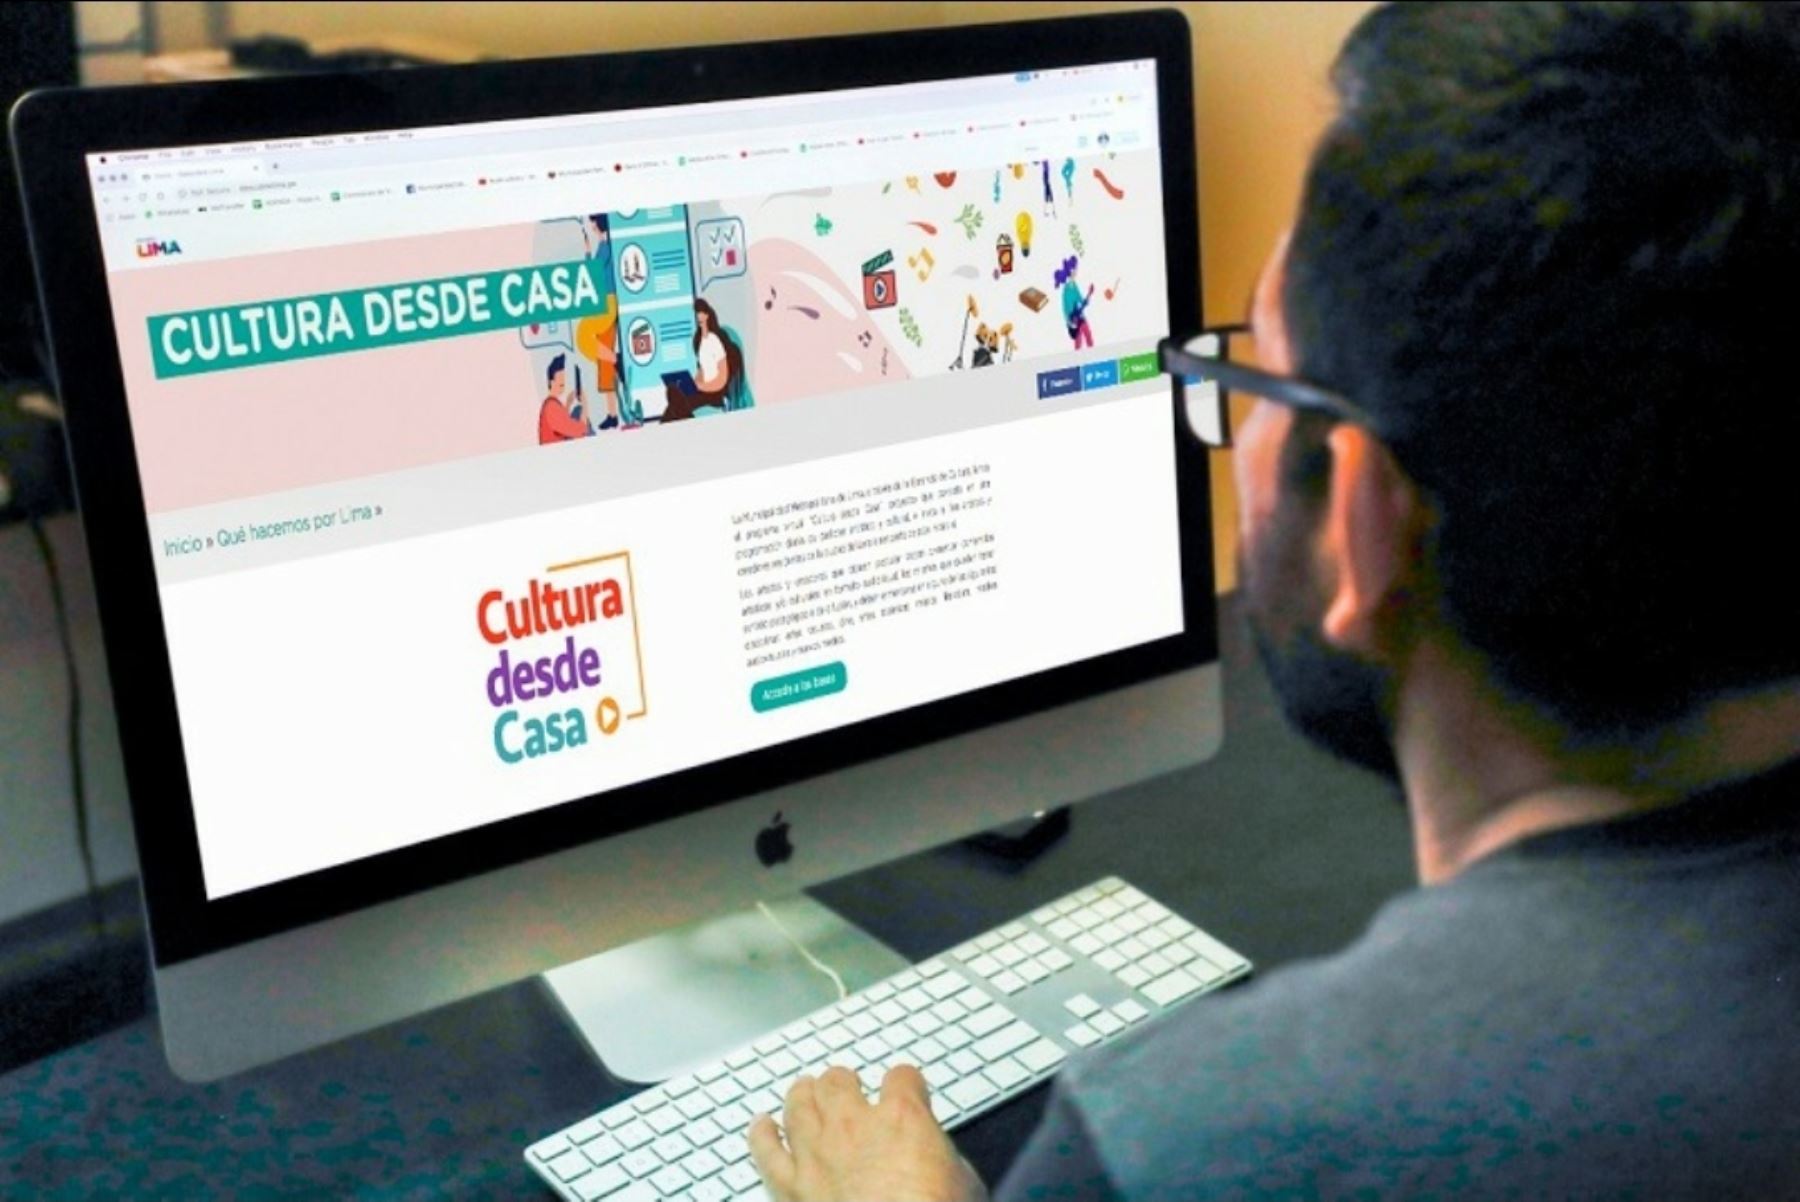 Artistas y creadores presentan sus proyectos en la plataforma de "Cultura desde Casa".